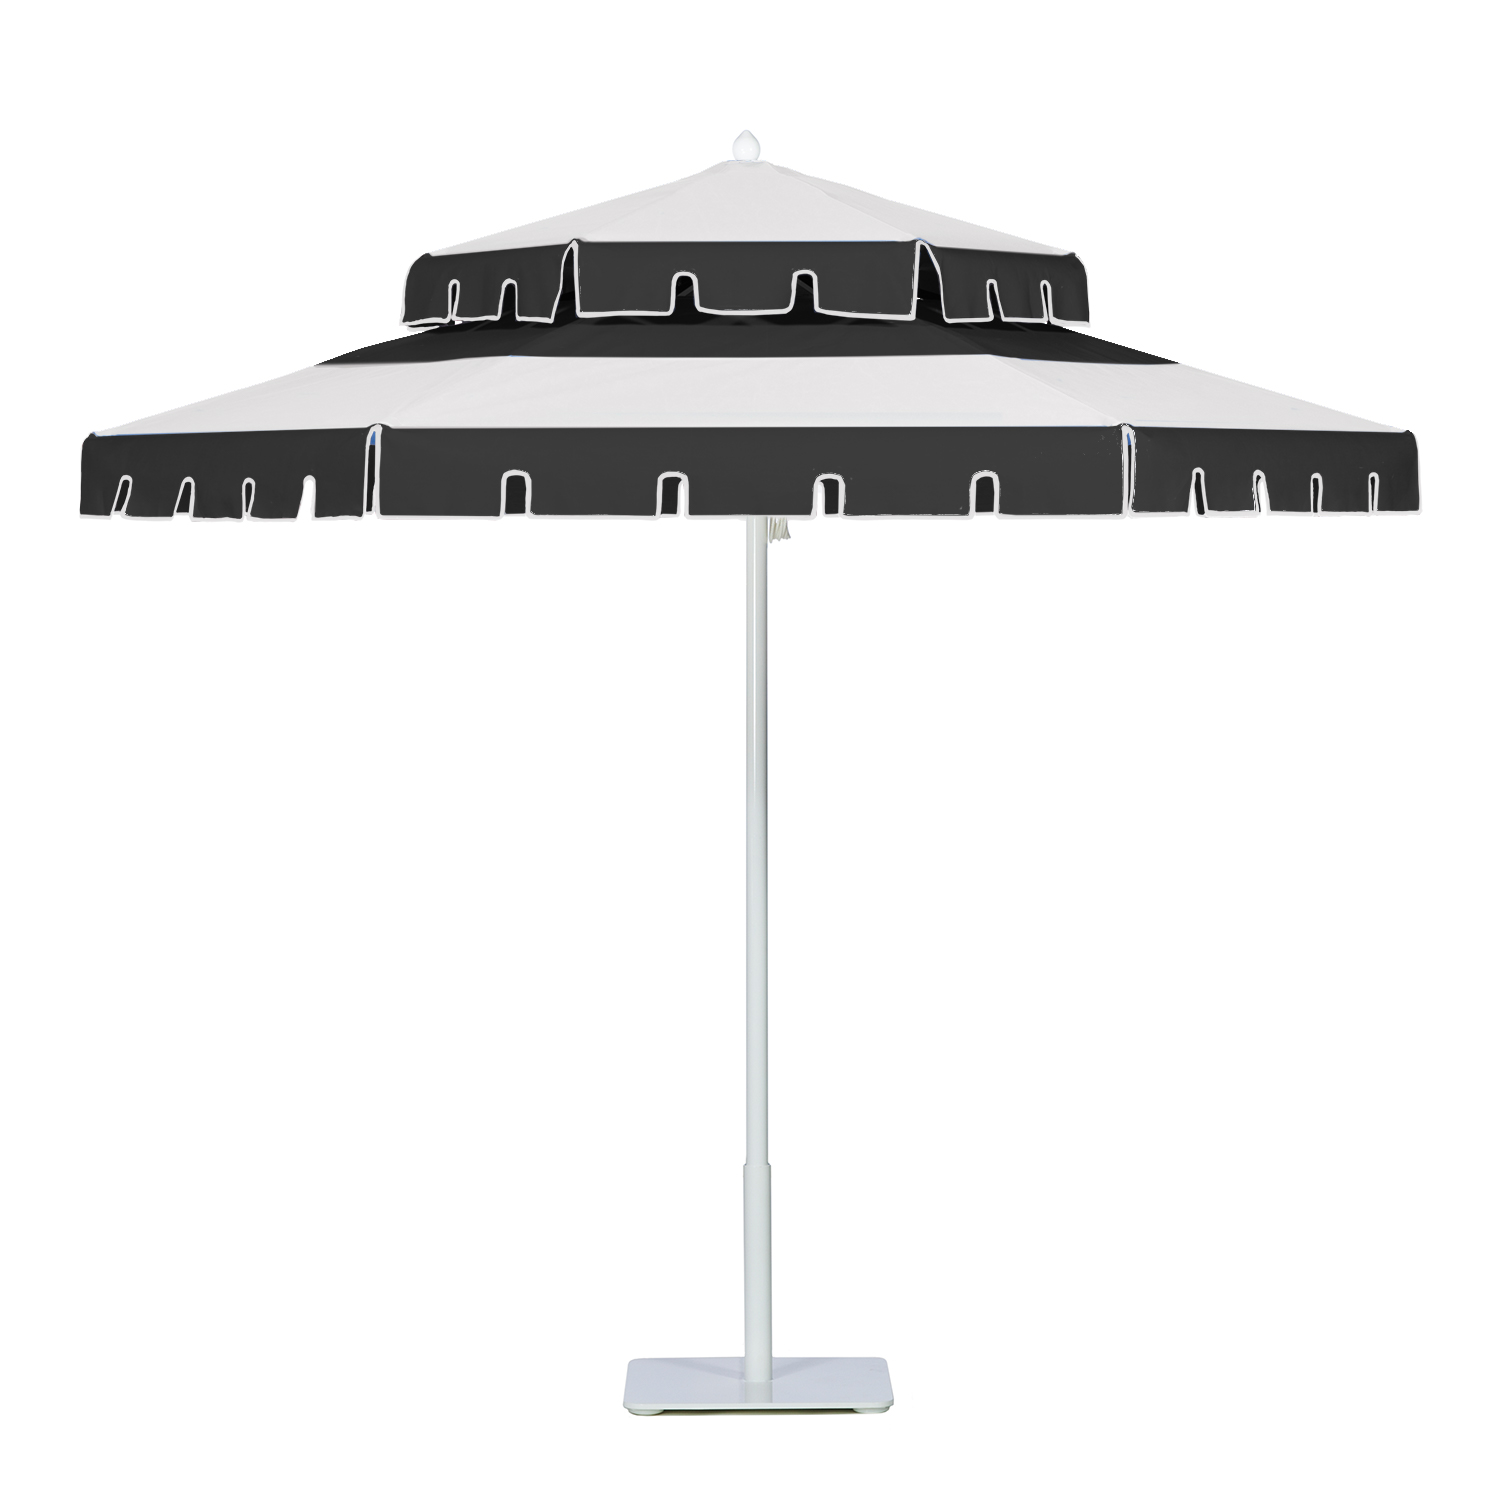 Image of Double Decker aluminum umbrella